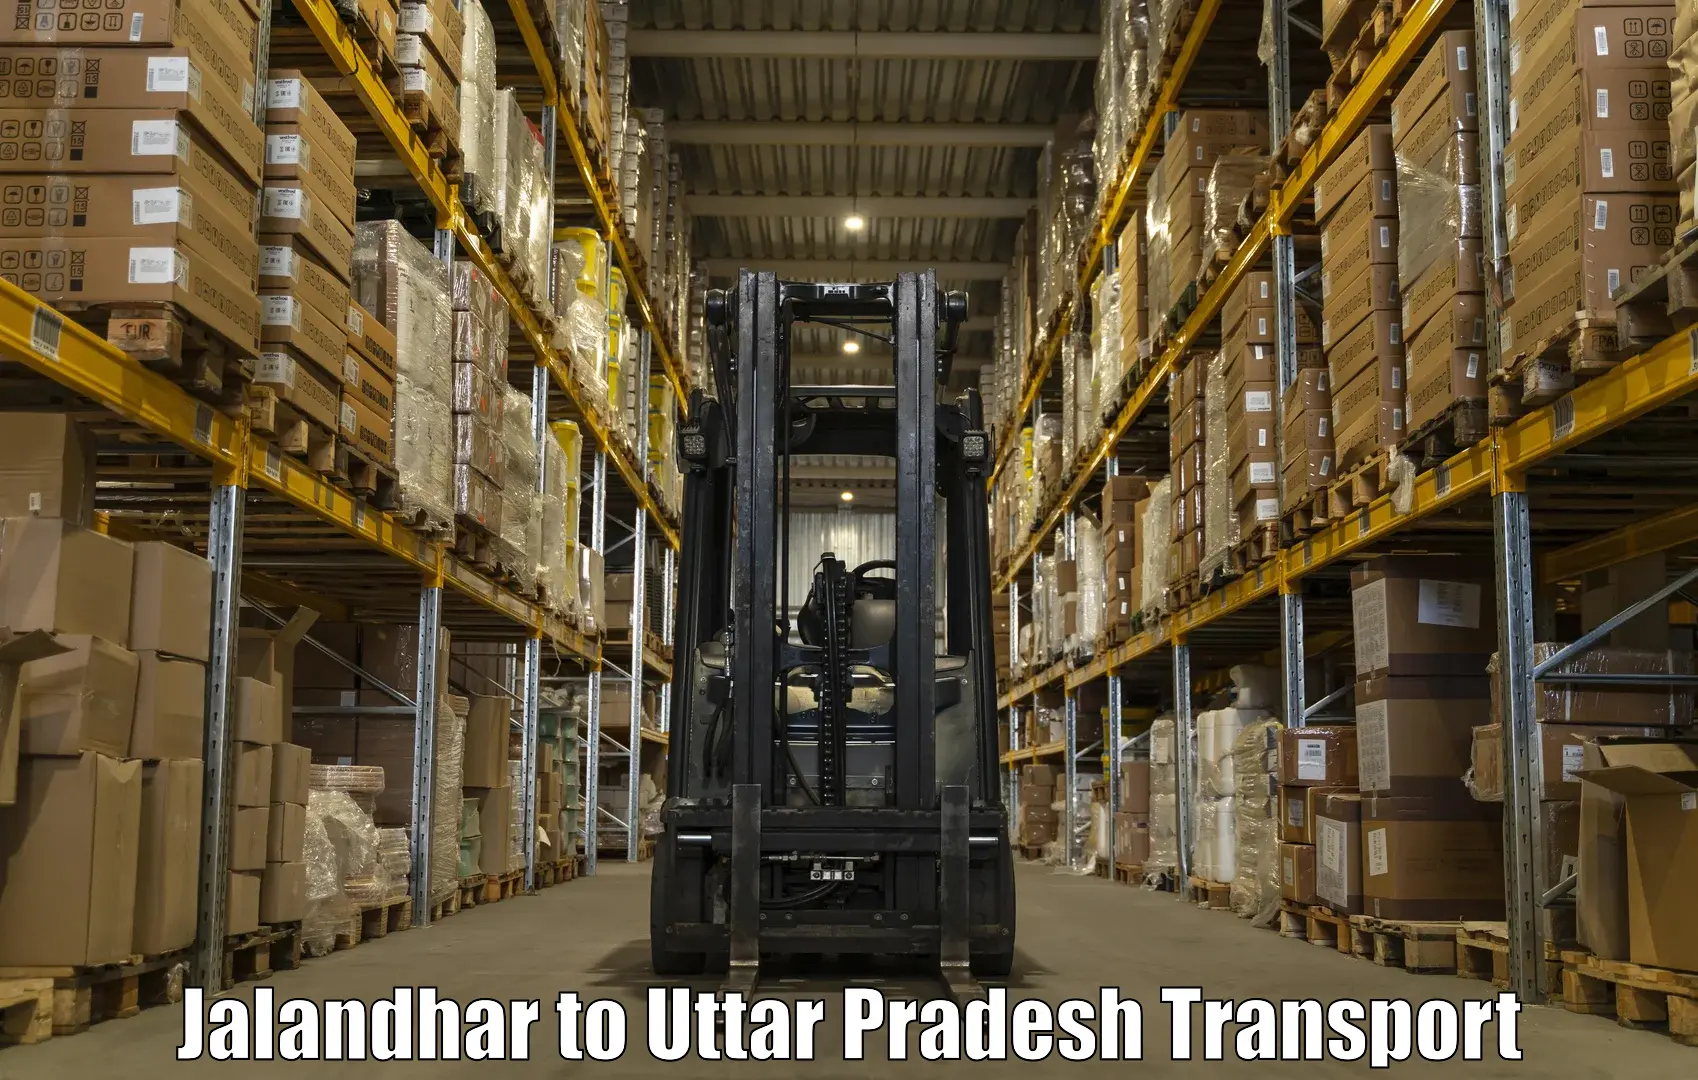 Shipping partner Jalandhar to Menhdawal